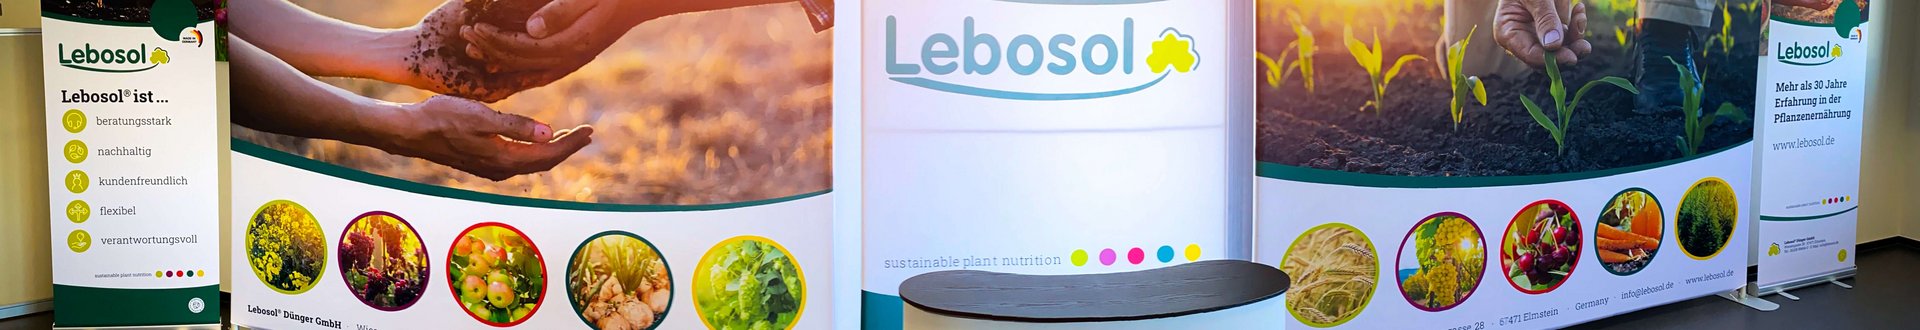 Große Messewände mit Lebosol® Branding und Pflanzenbilder